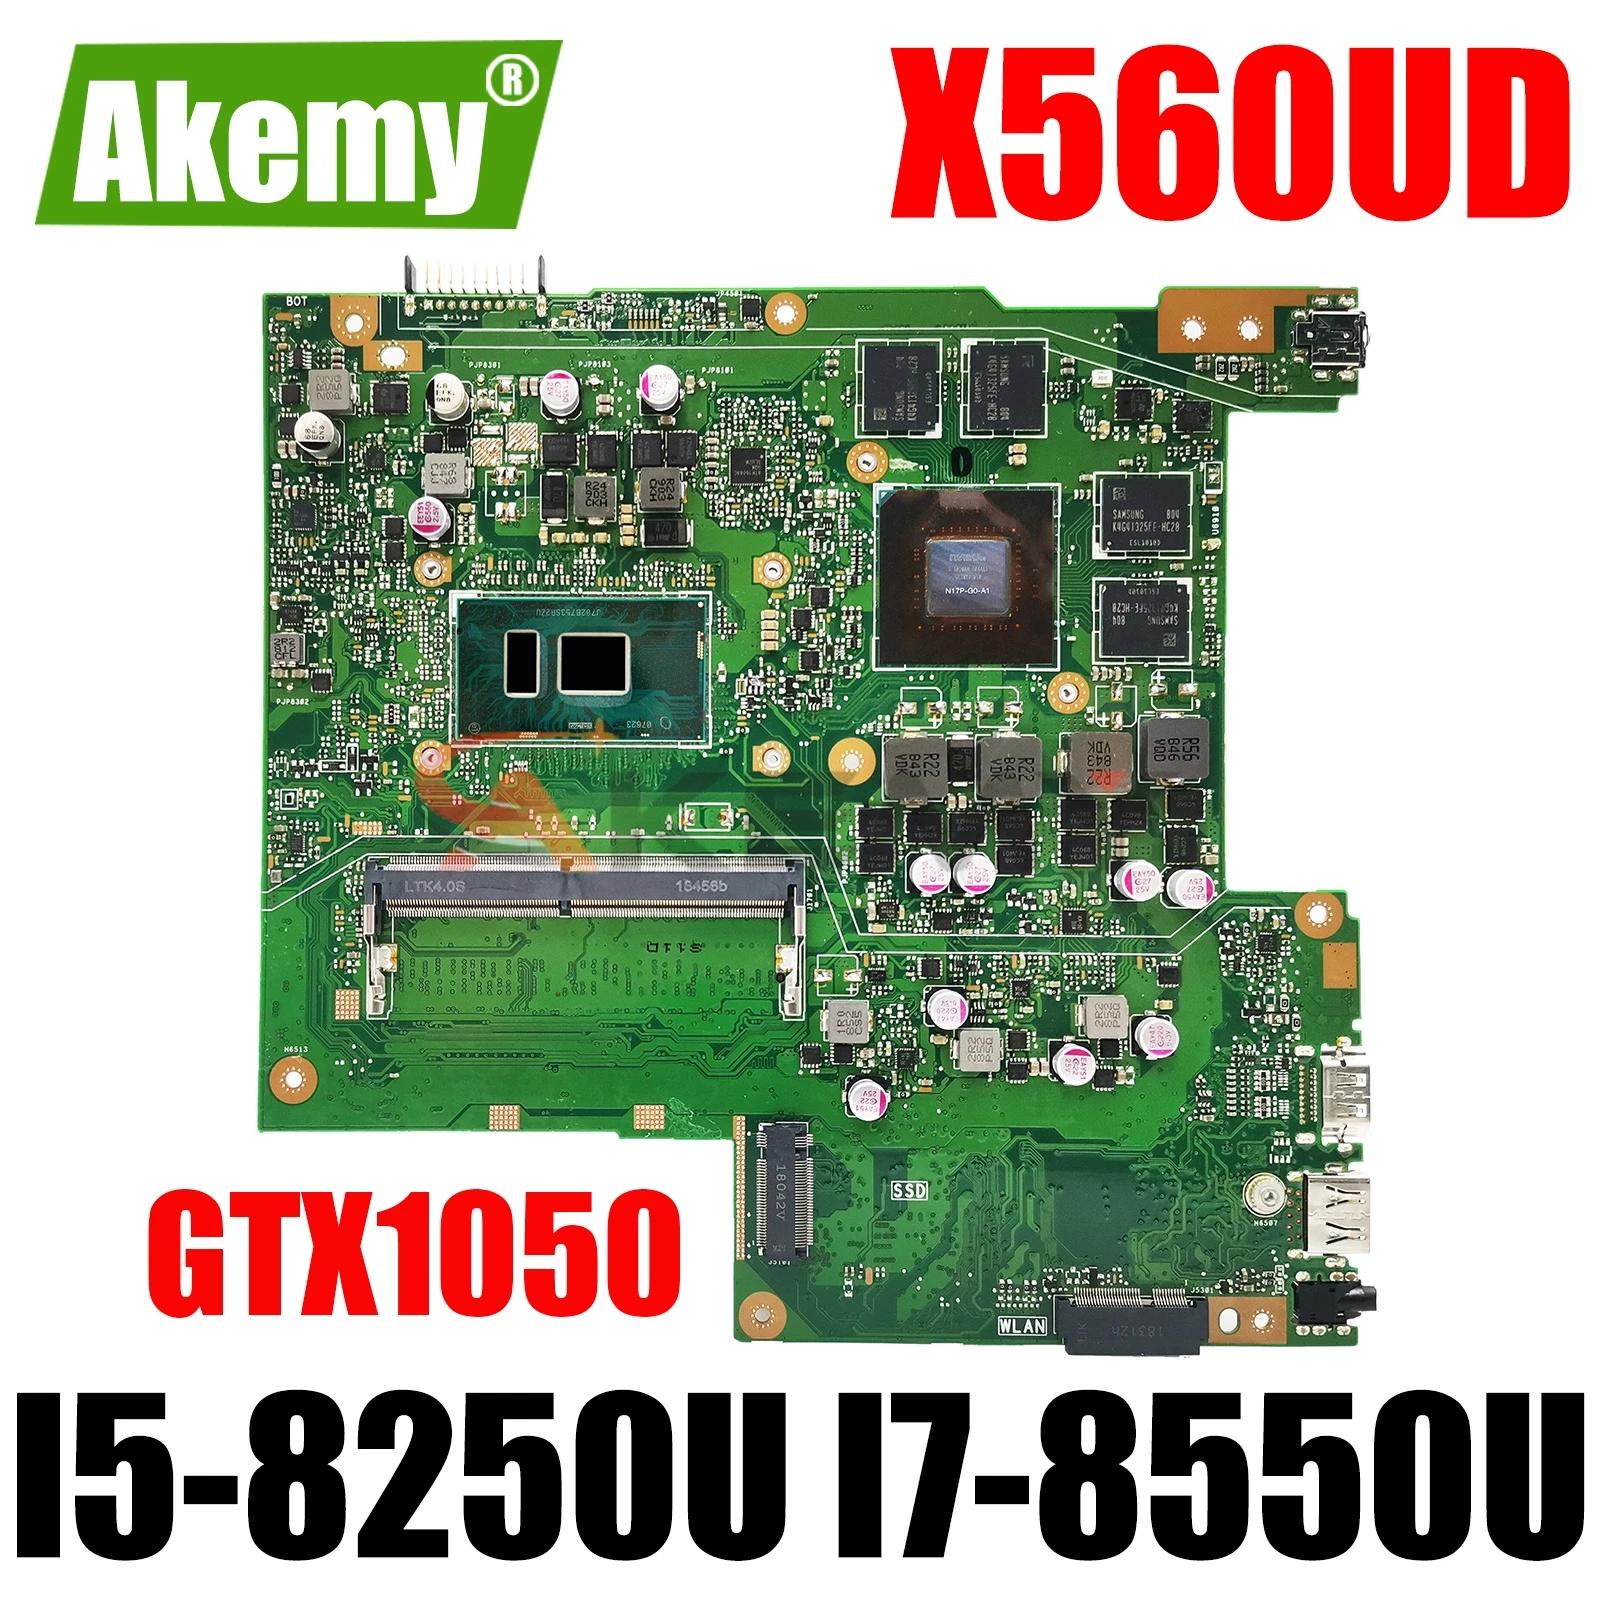 AKEMY Ʈ , ASUS VivoBook X560 NX560UD X560U X560UD X560UD , I5-8250U I7-8550U CPU GTX1050